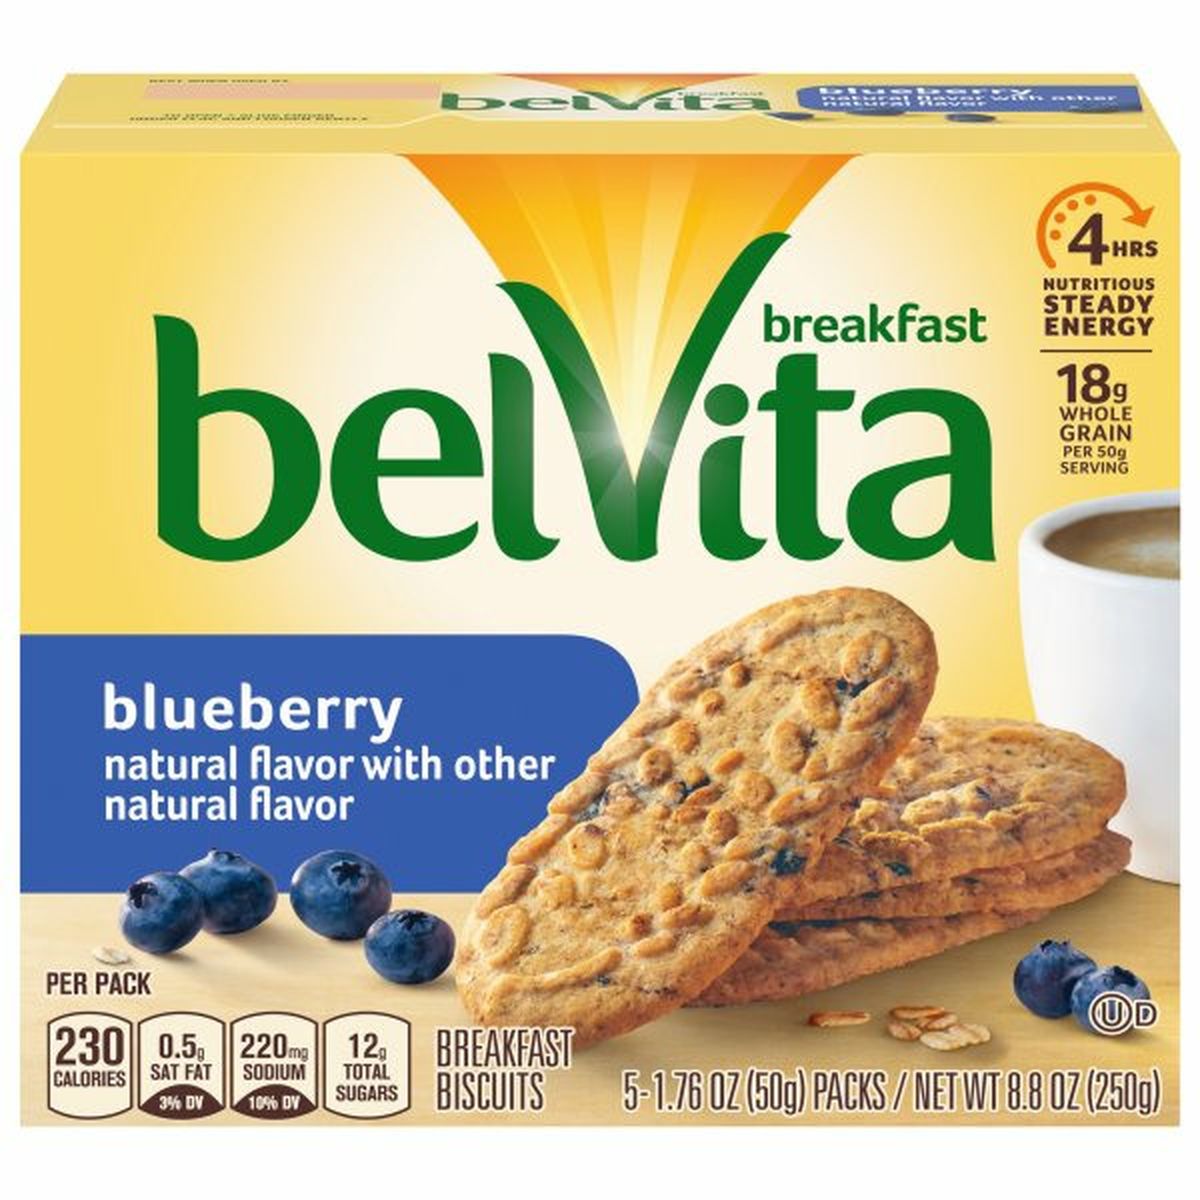 Calories in belVita Breakfast Biscuits, Blueberry